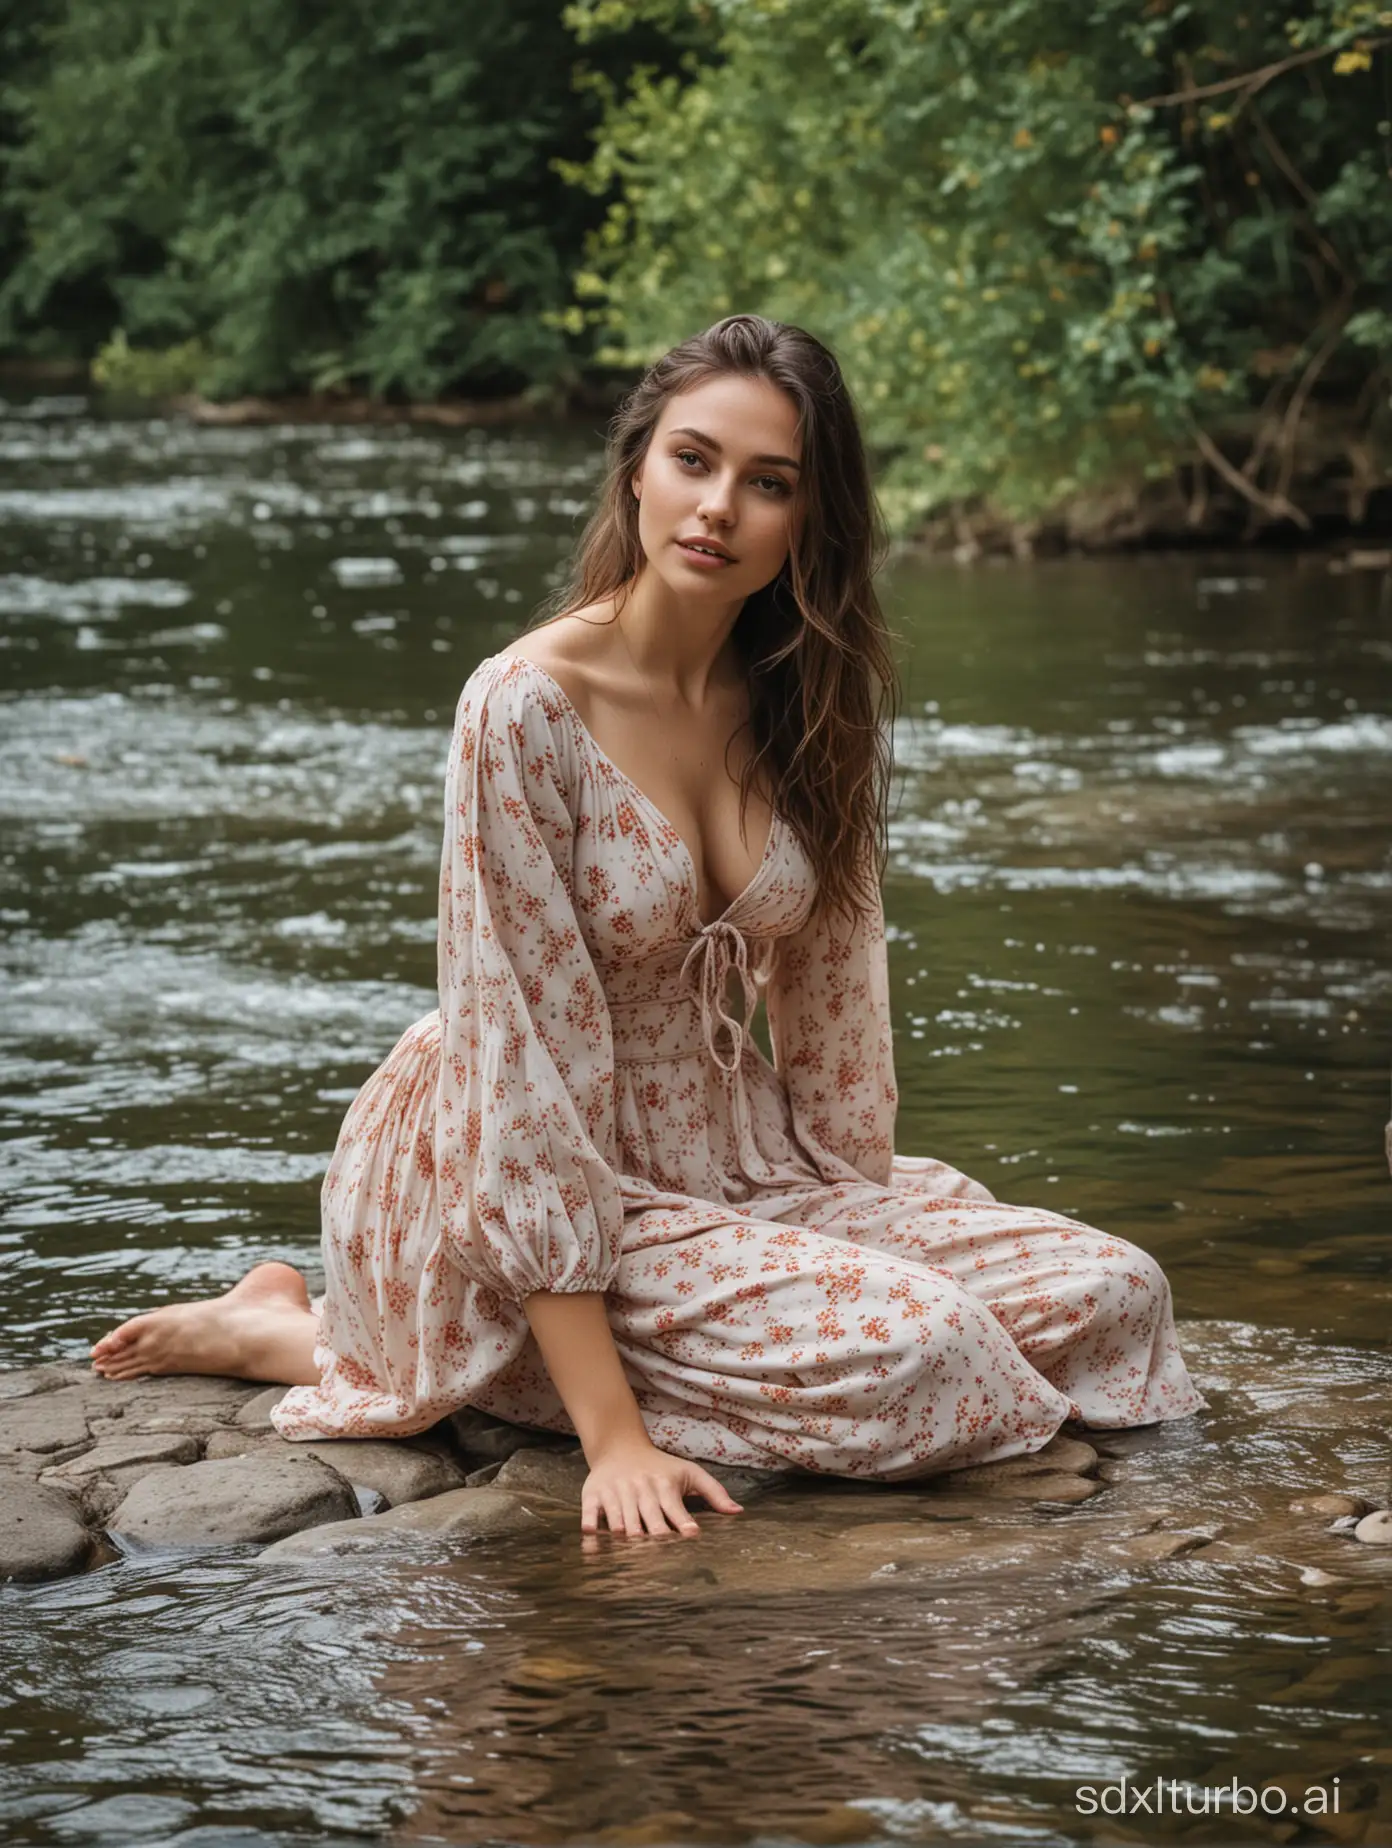 一个美女坐在河边戏水